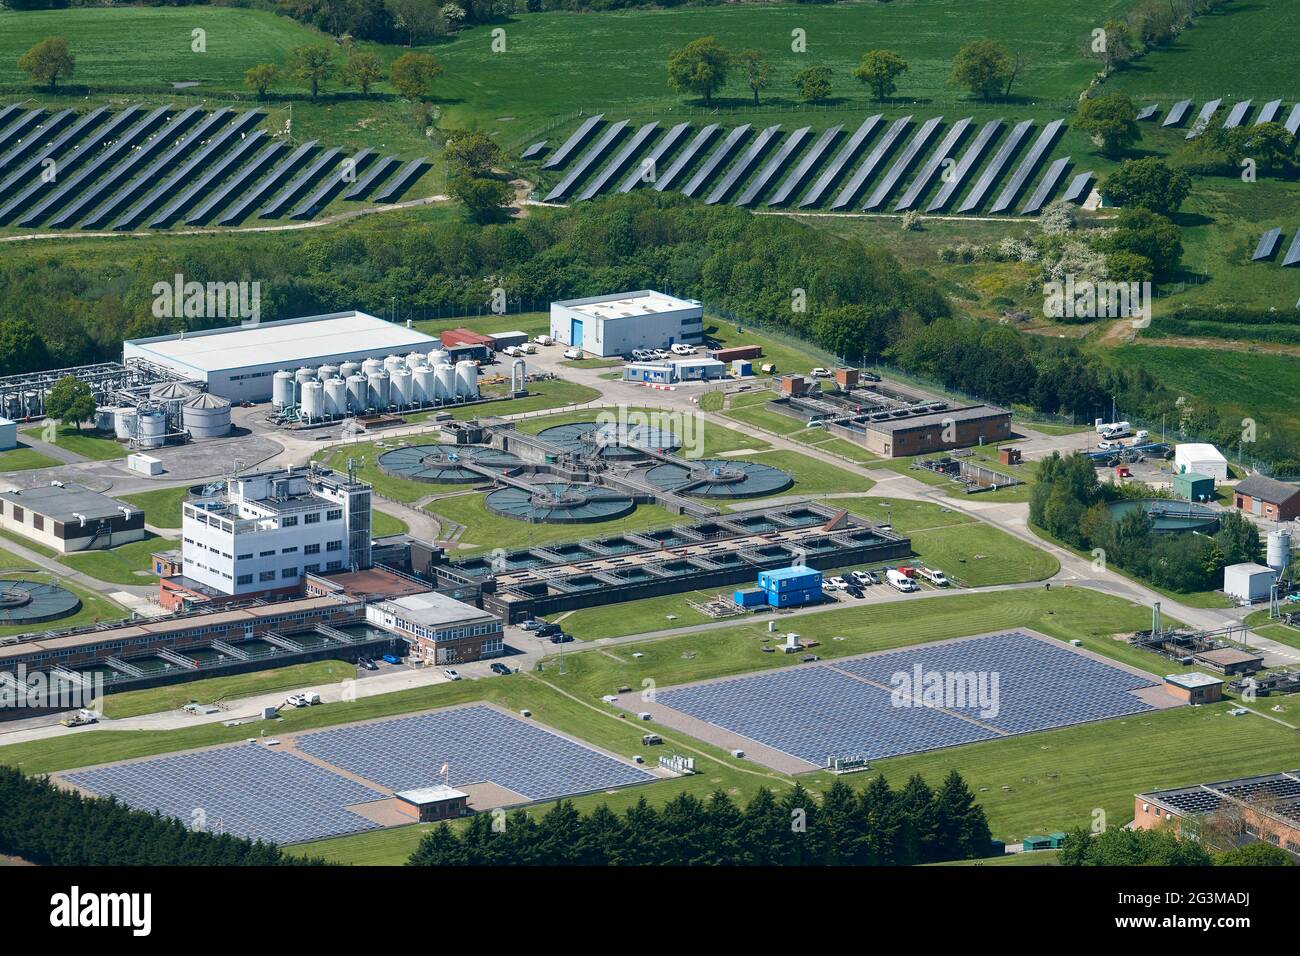 Une photographie aérienne d'un traitement de l'eau travaille avec une ferme solaire adjacente, Chester, nord-ouest de l'Angleterre, Royaume-Uni Banque D'Images